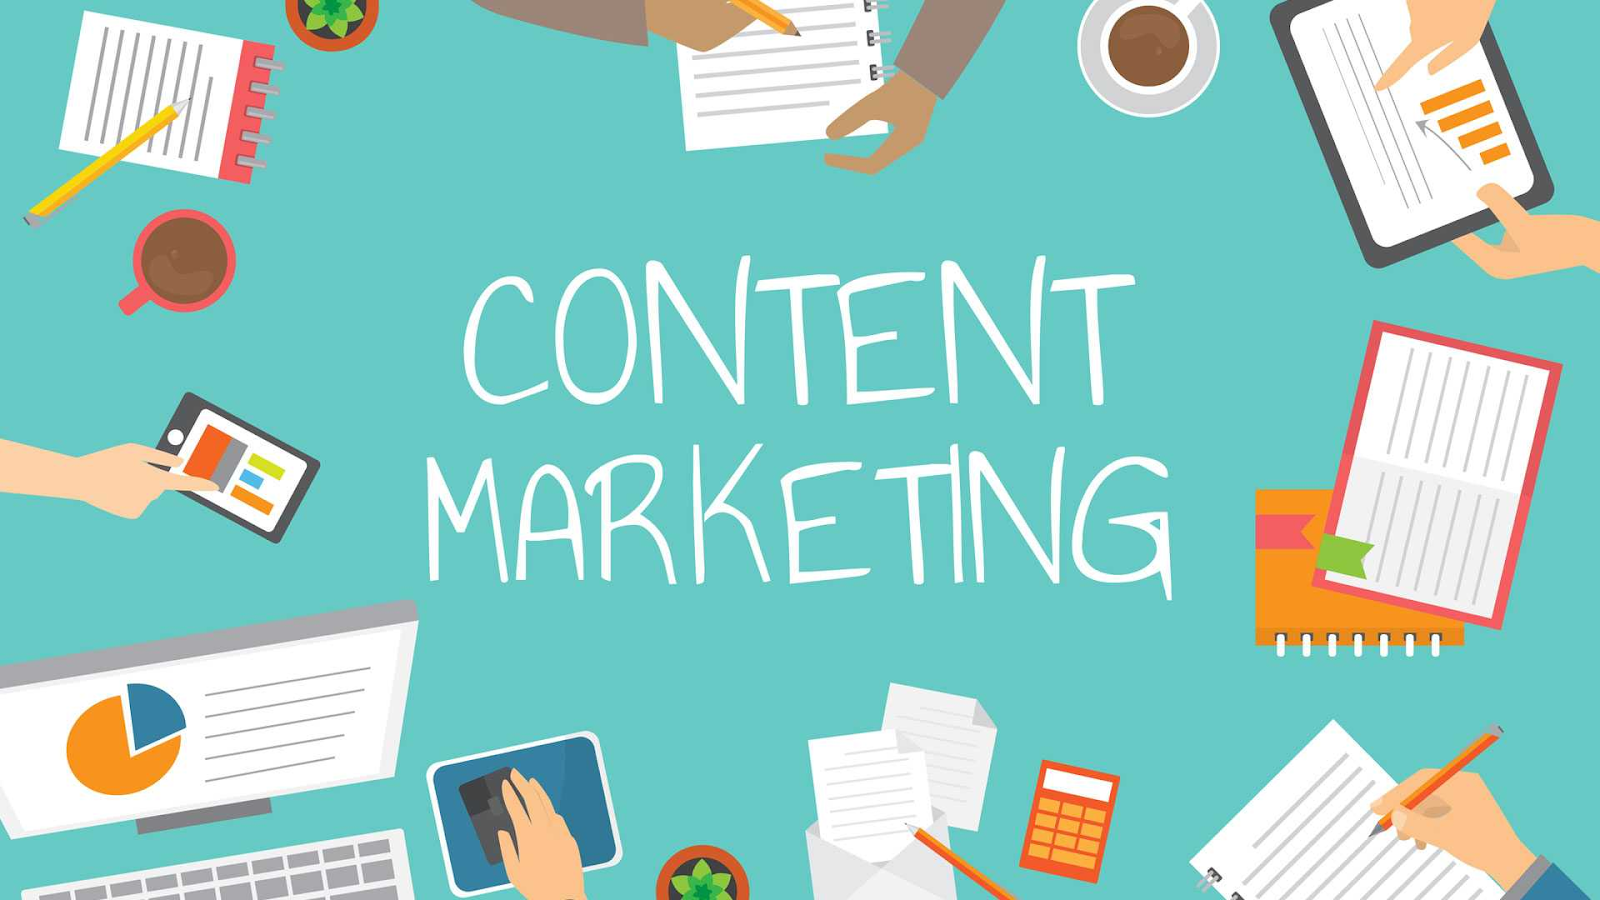 Làm Content Marketing hiệu quả bằng cách nào?